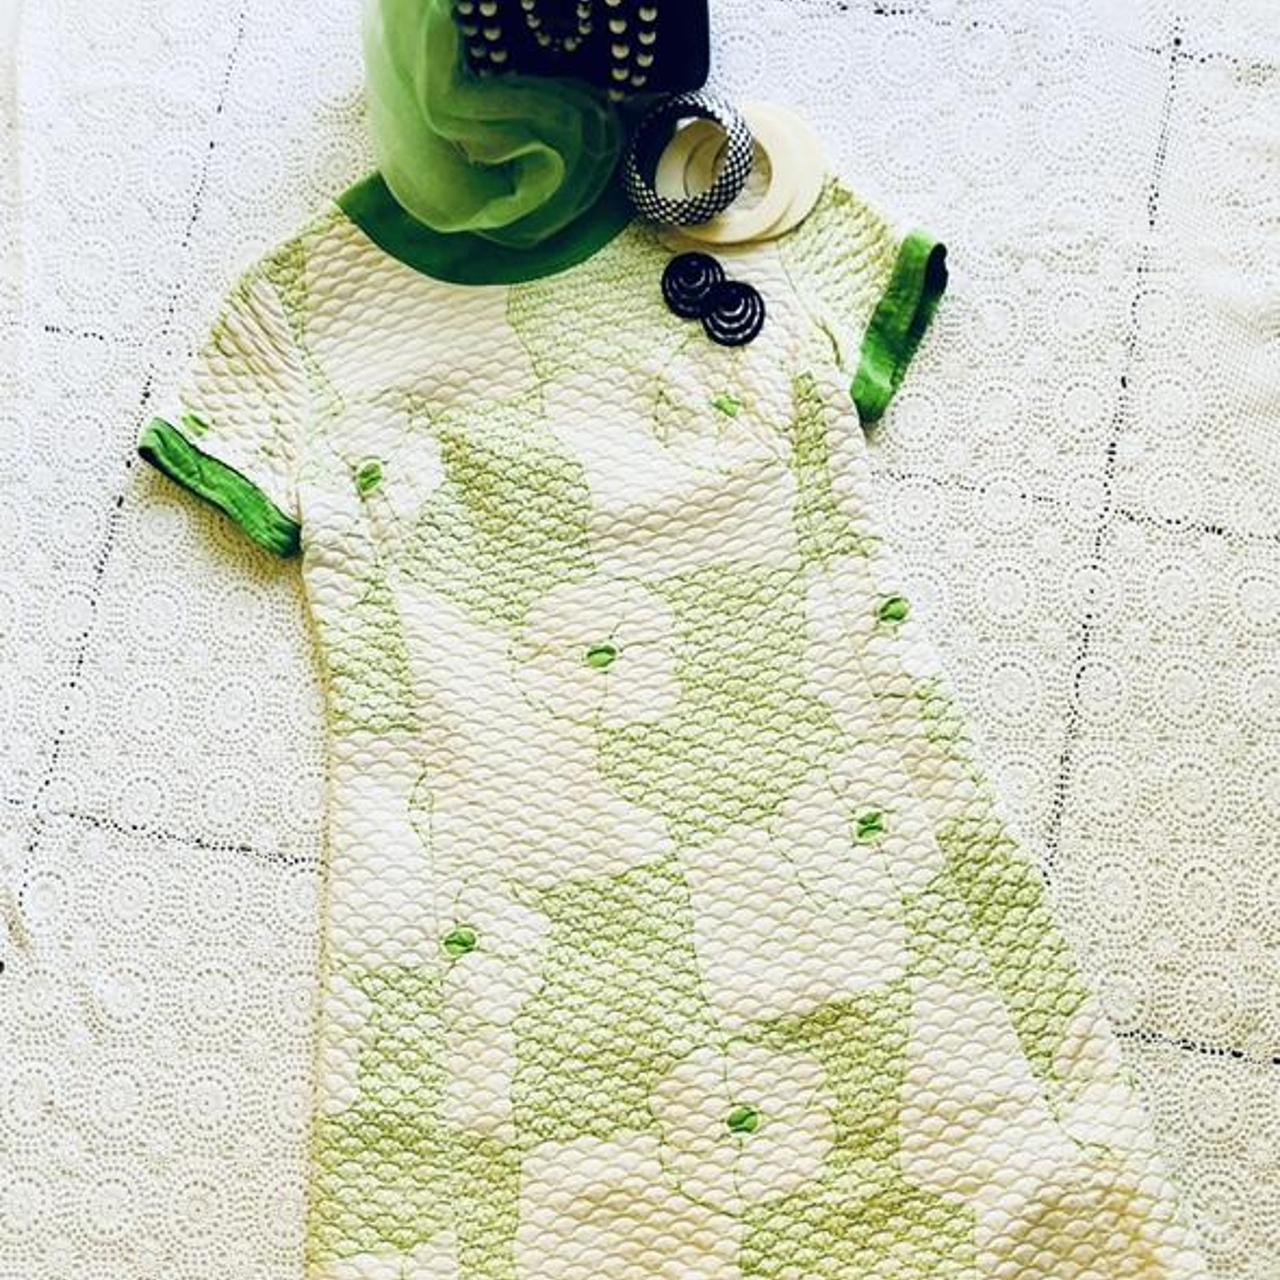 Marimekko Women's White and Green Dress | Depop